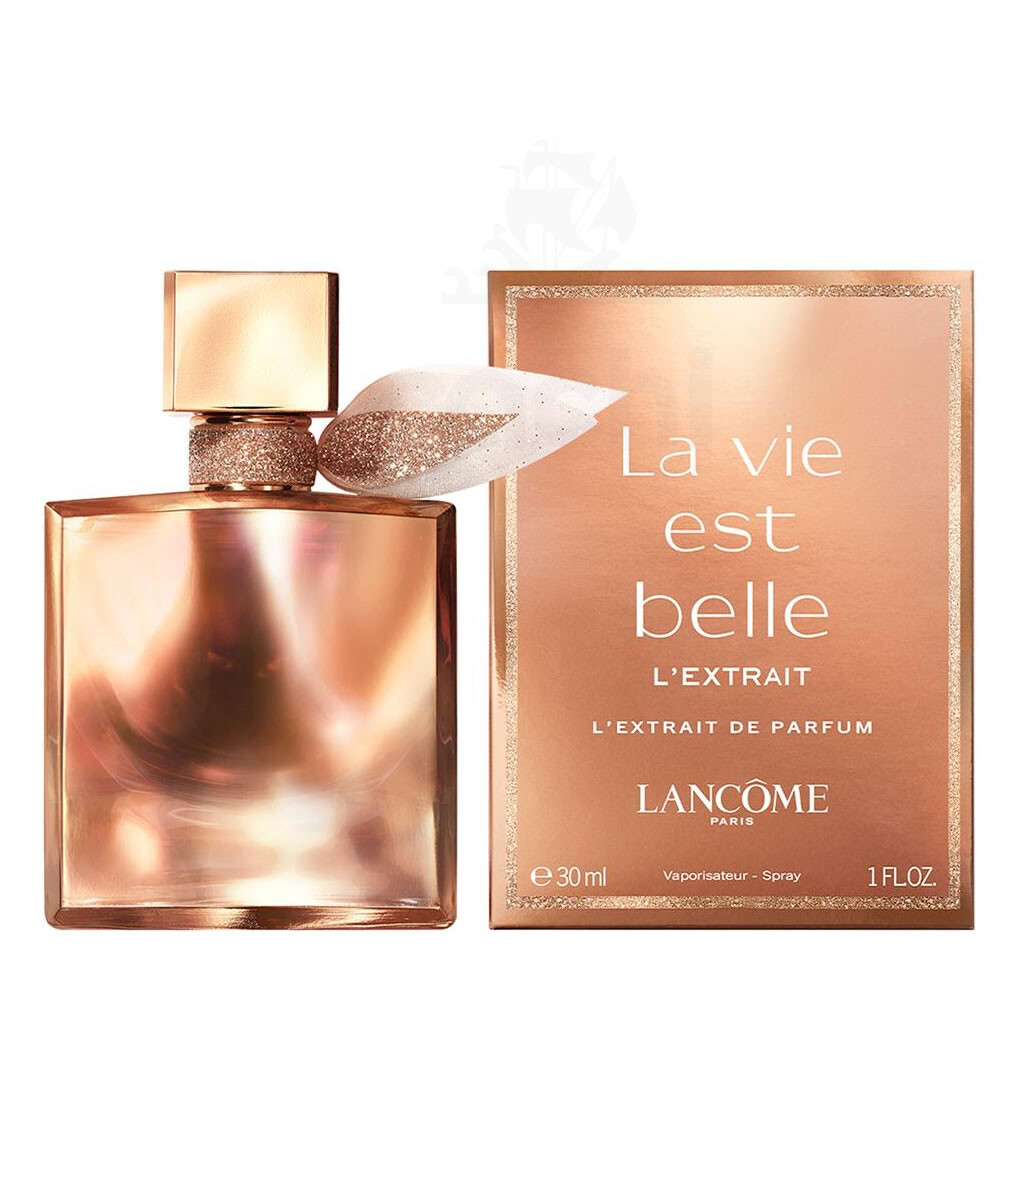 La vie est belle L´extrait de parfum Lancome - 30 ml 